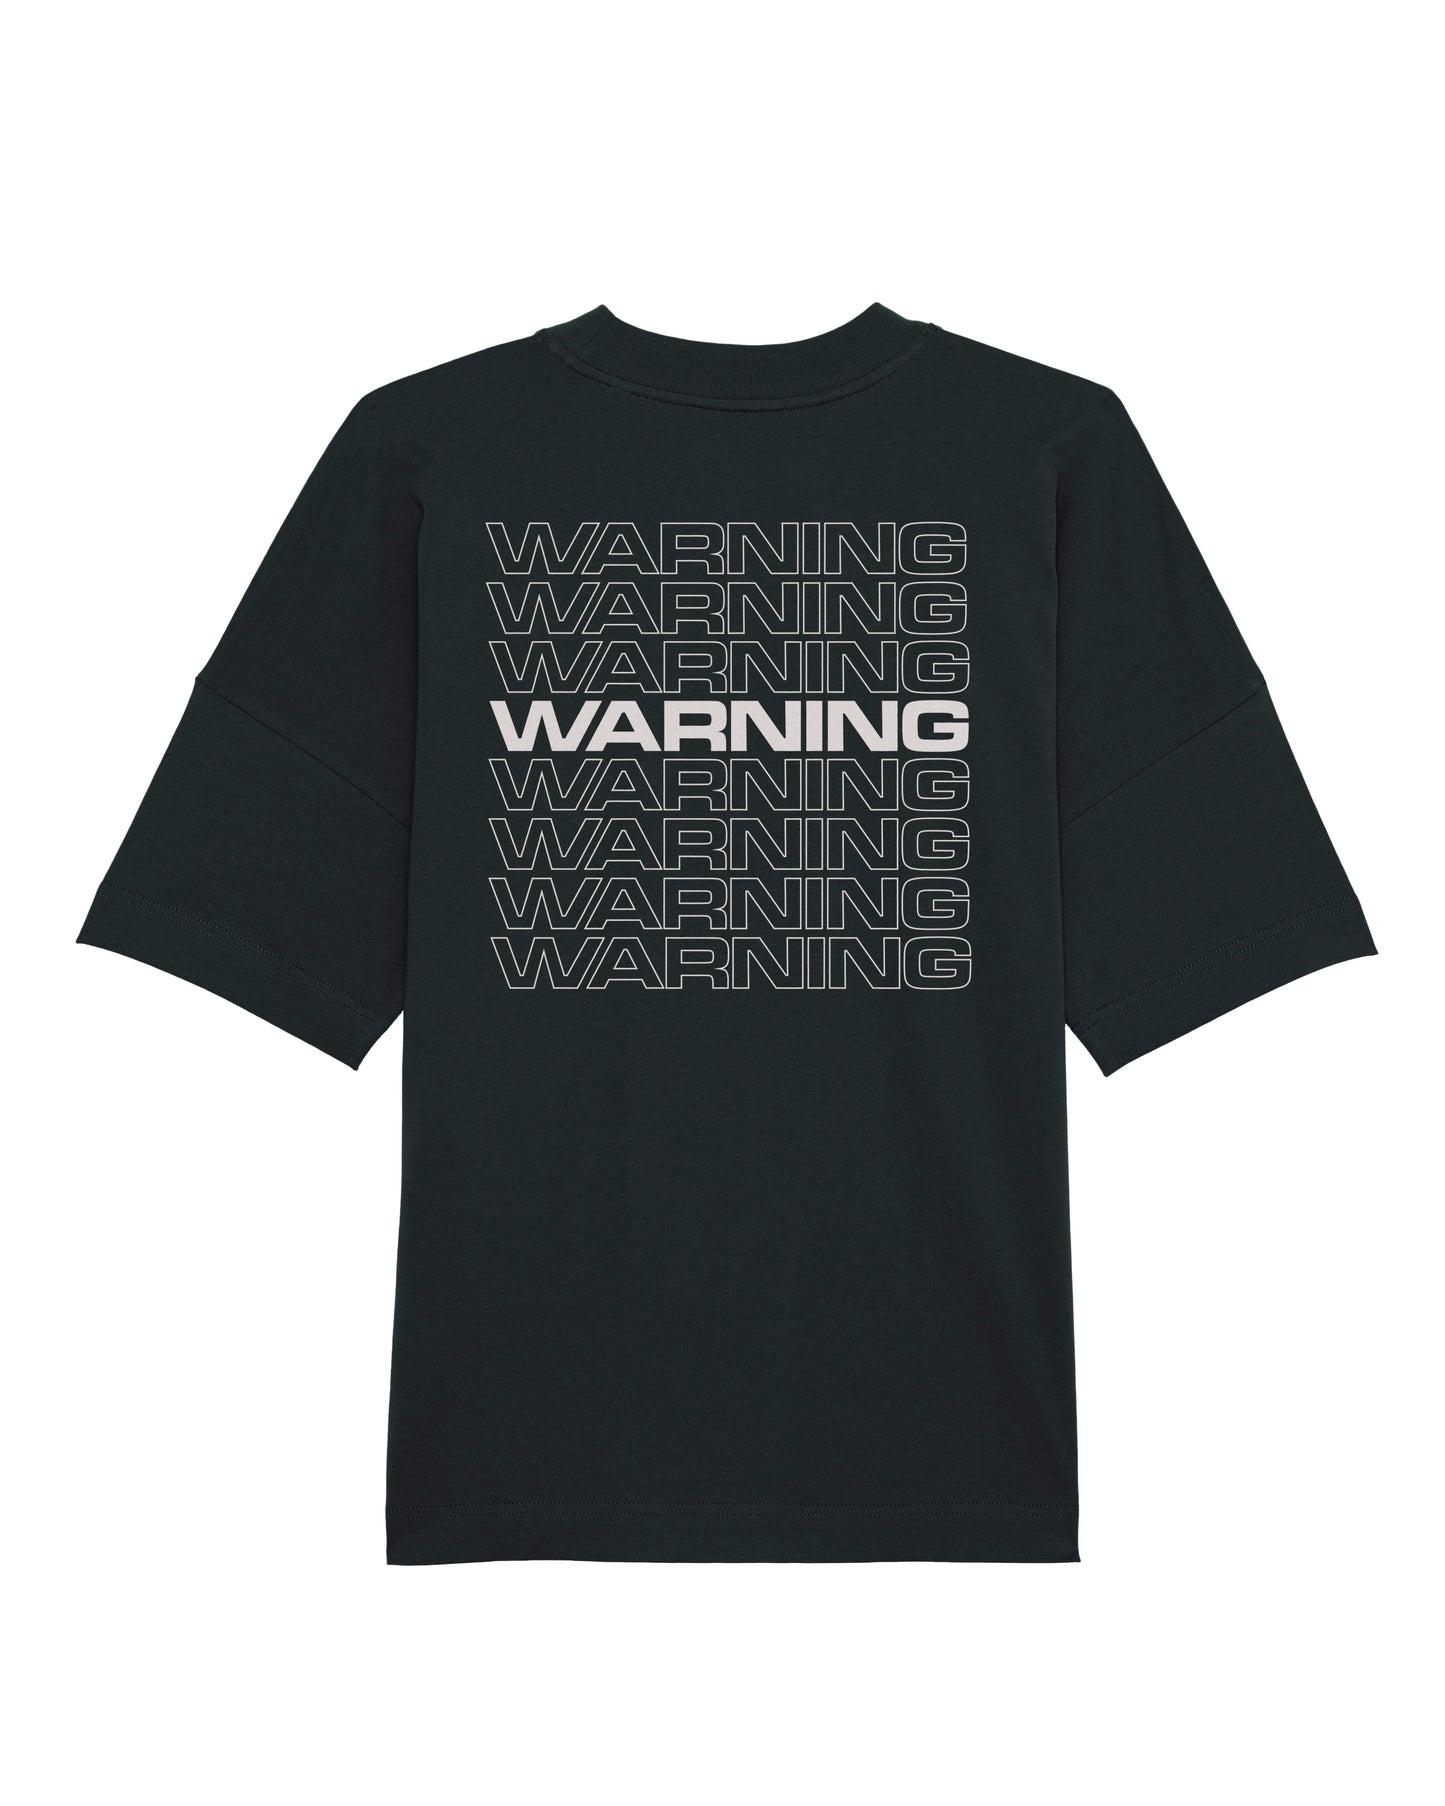 Warning Logo - White on Black - Unisex T-Shirt